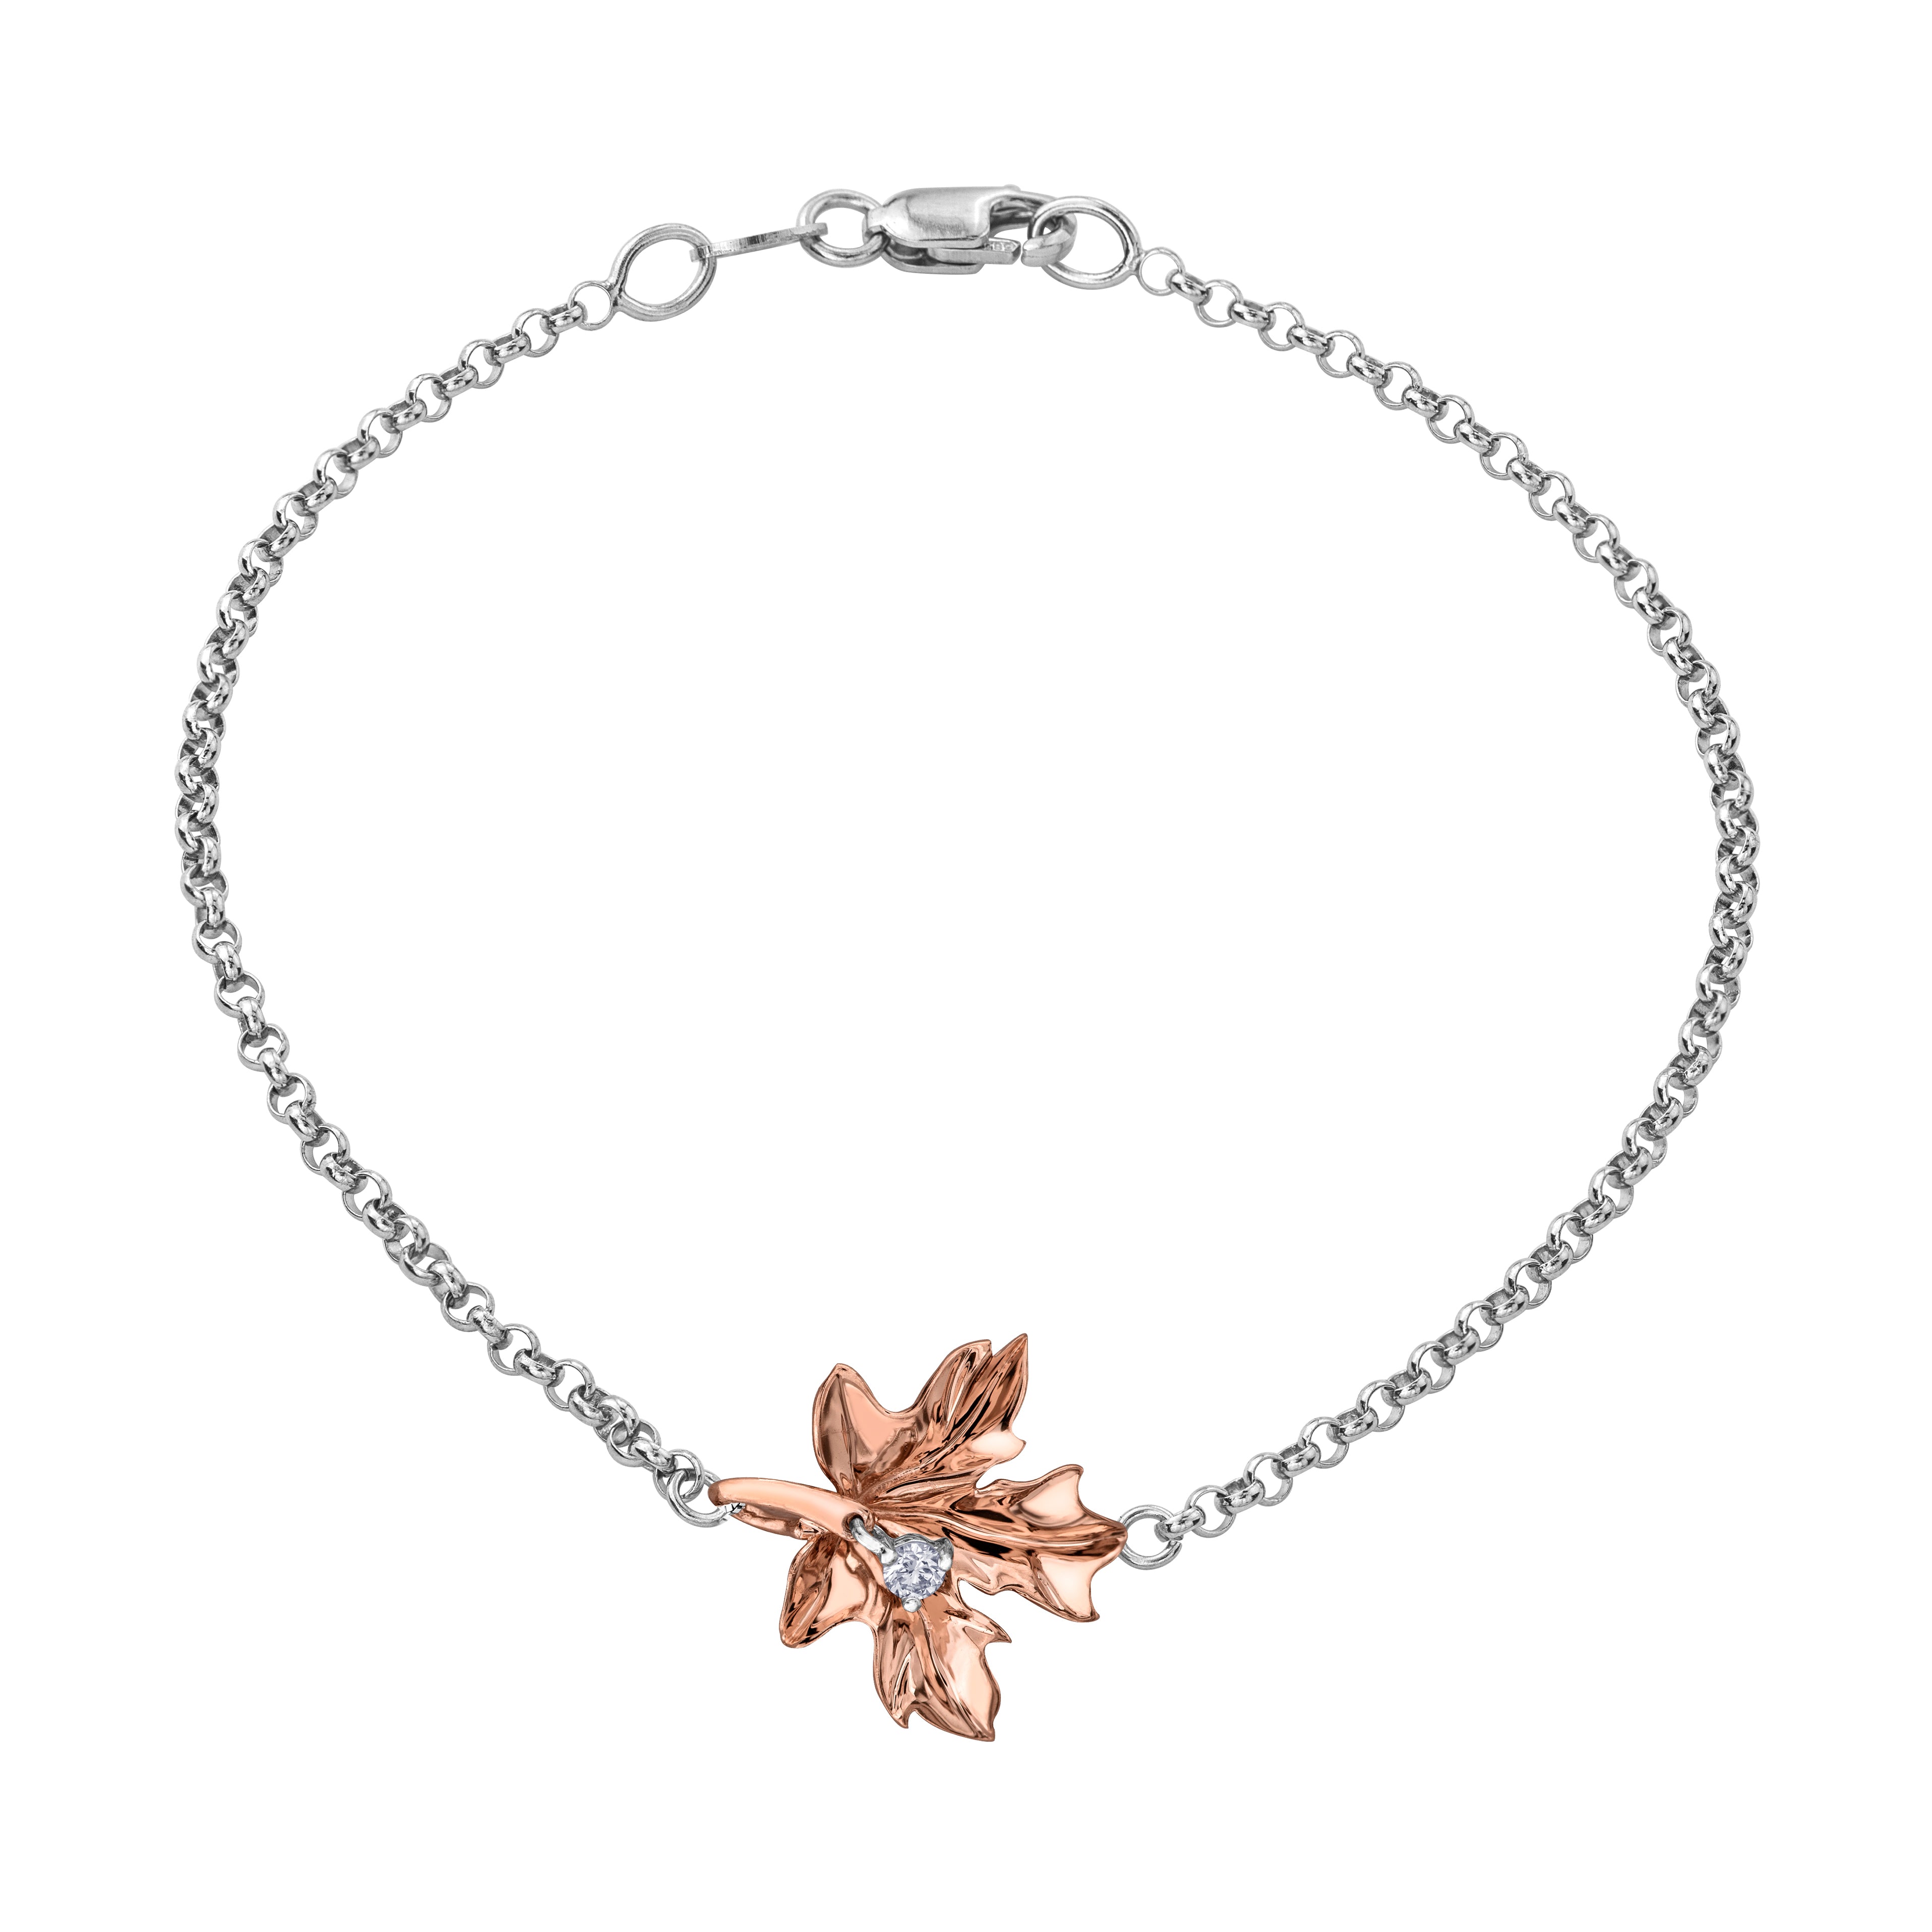 Maile Leaf Bracelet – Na Hoku